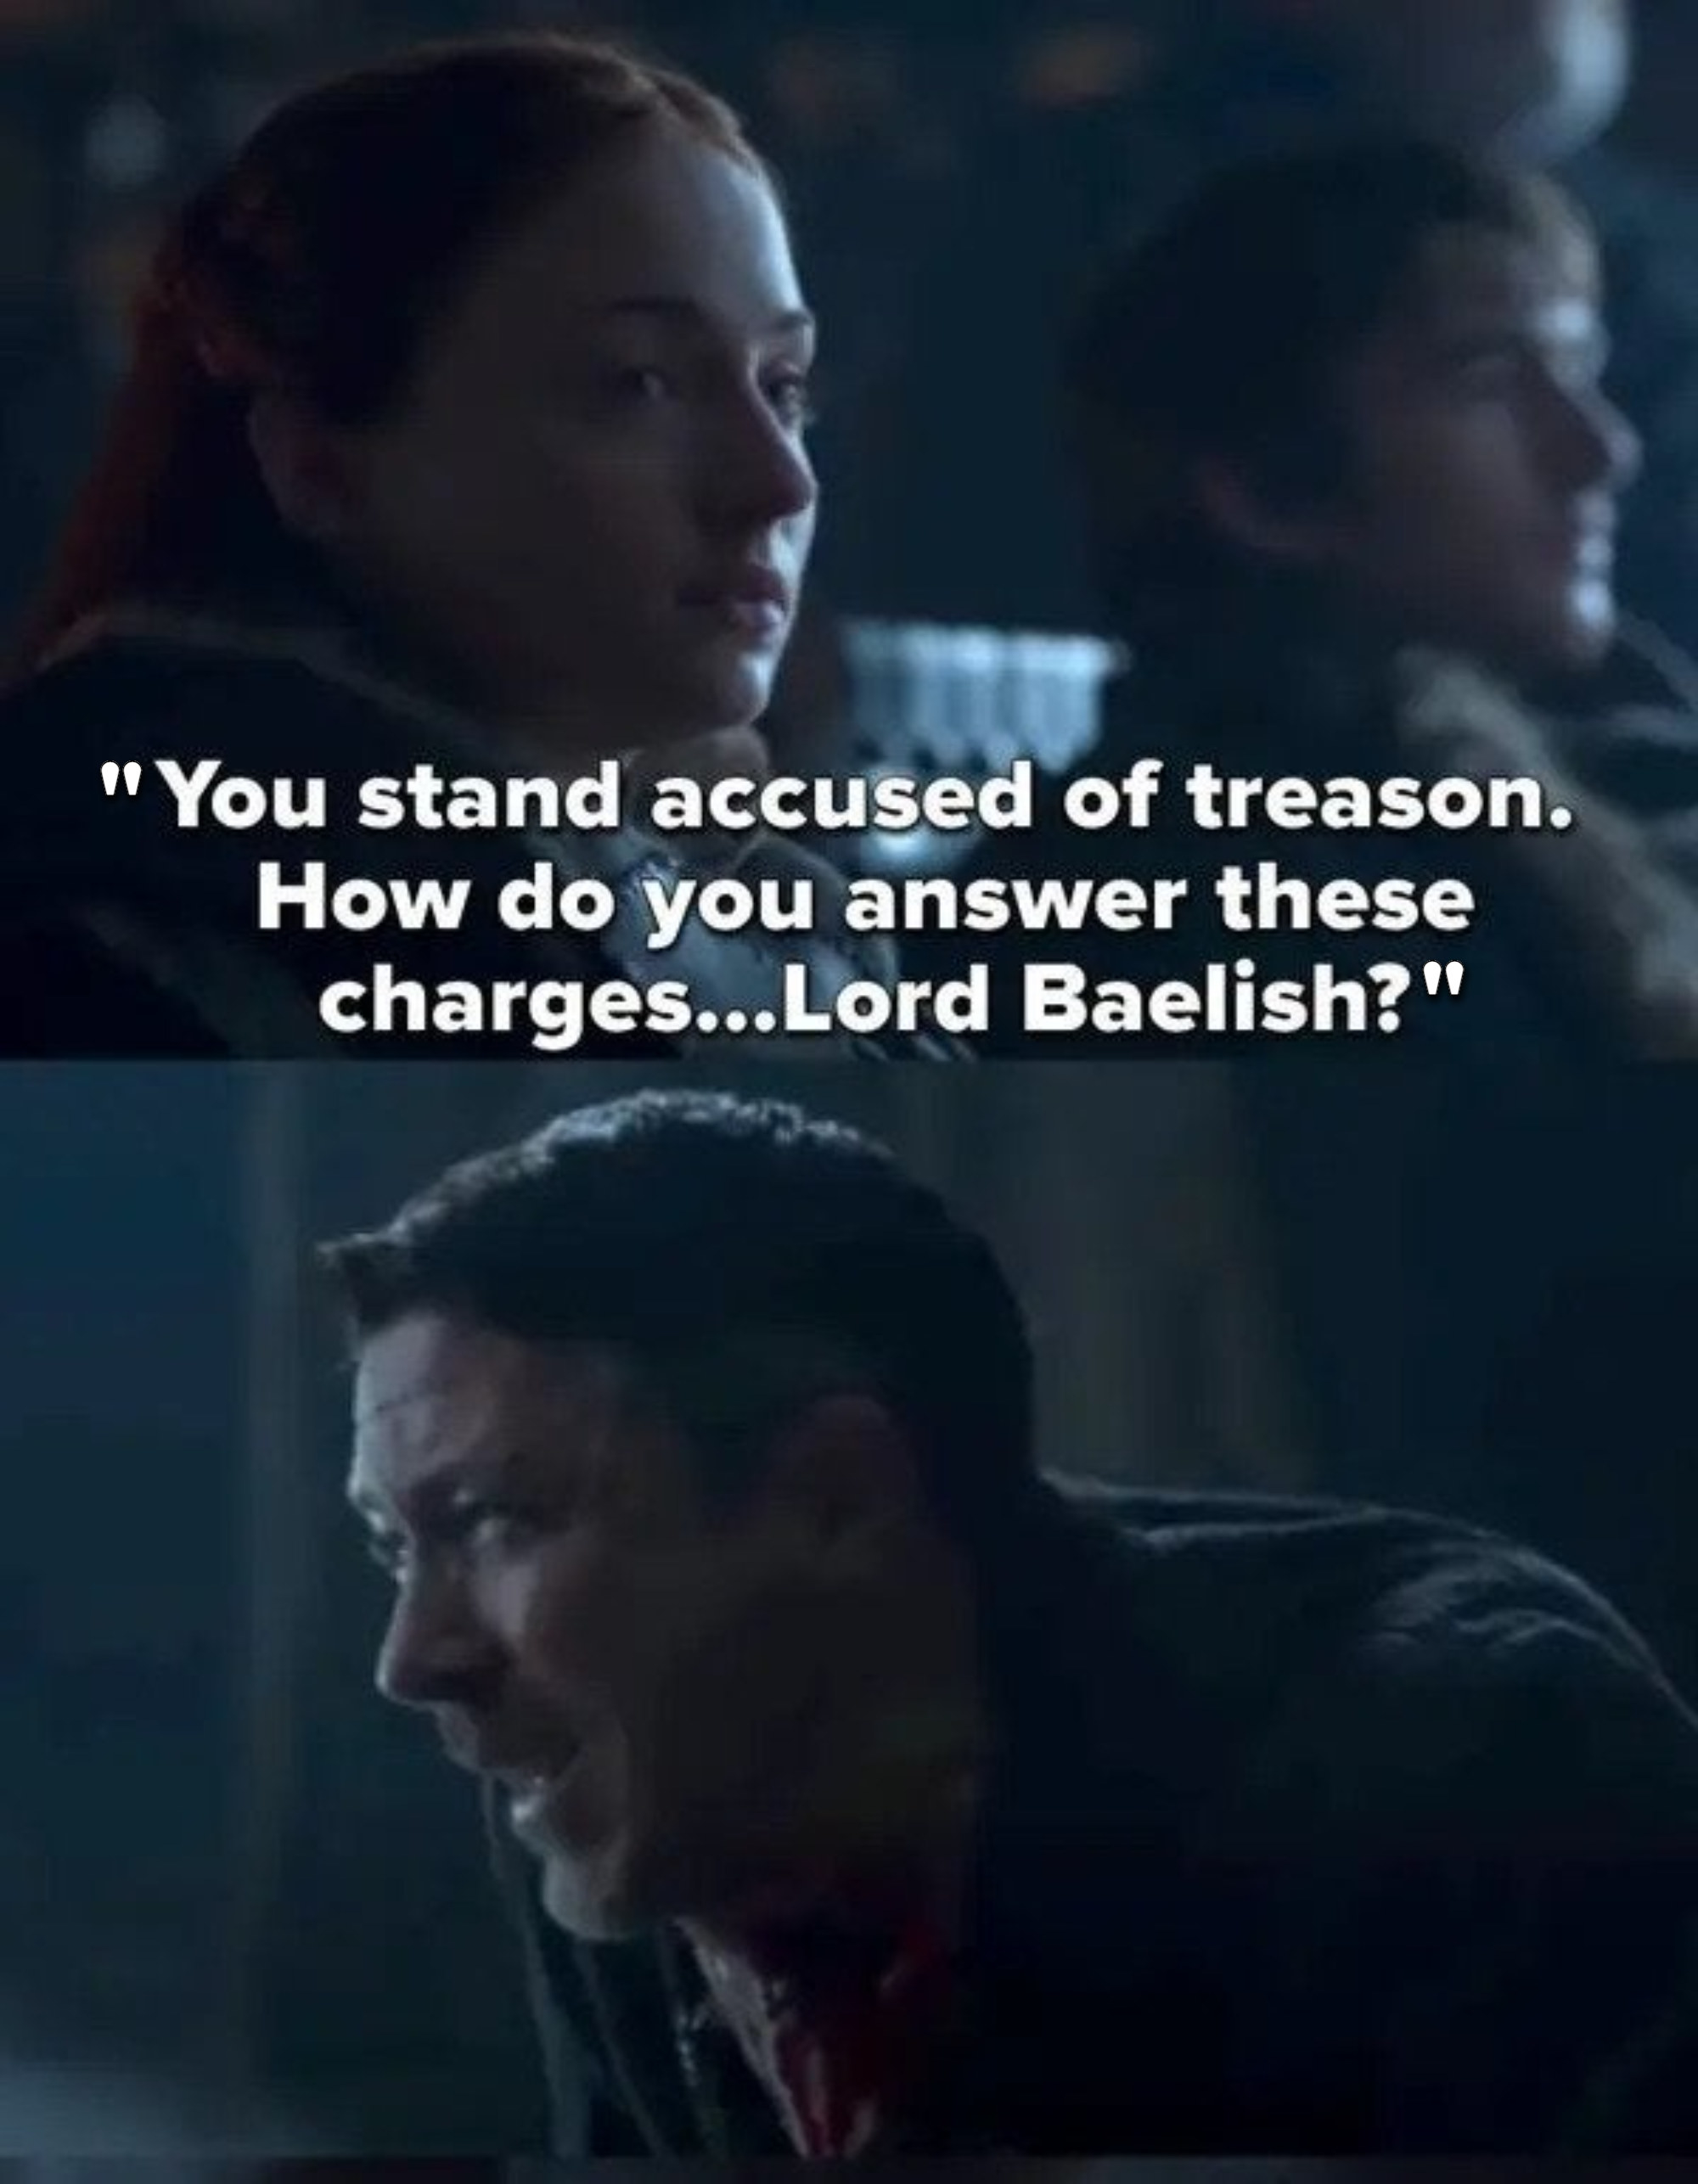 珊莎说:“你被指控叛国罪;你如何回答这些指控……主Baelish吗?“然后Arya缝他的喉咙